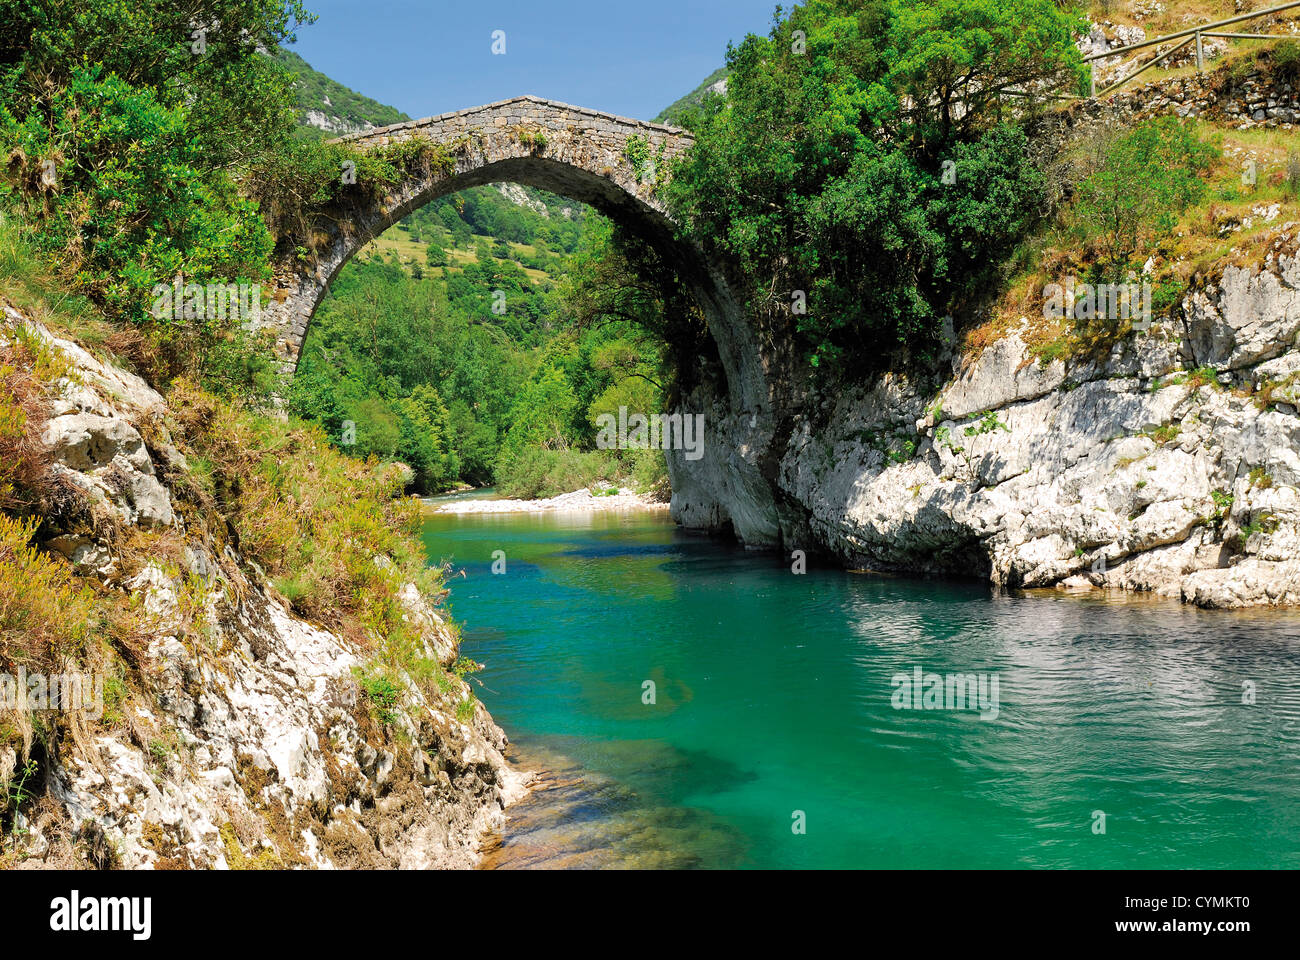 Spain, Asturias: Romanesque stone bridge over mountain river Cares in National Park Picos de Europa Stock Photo